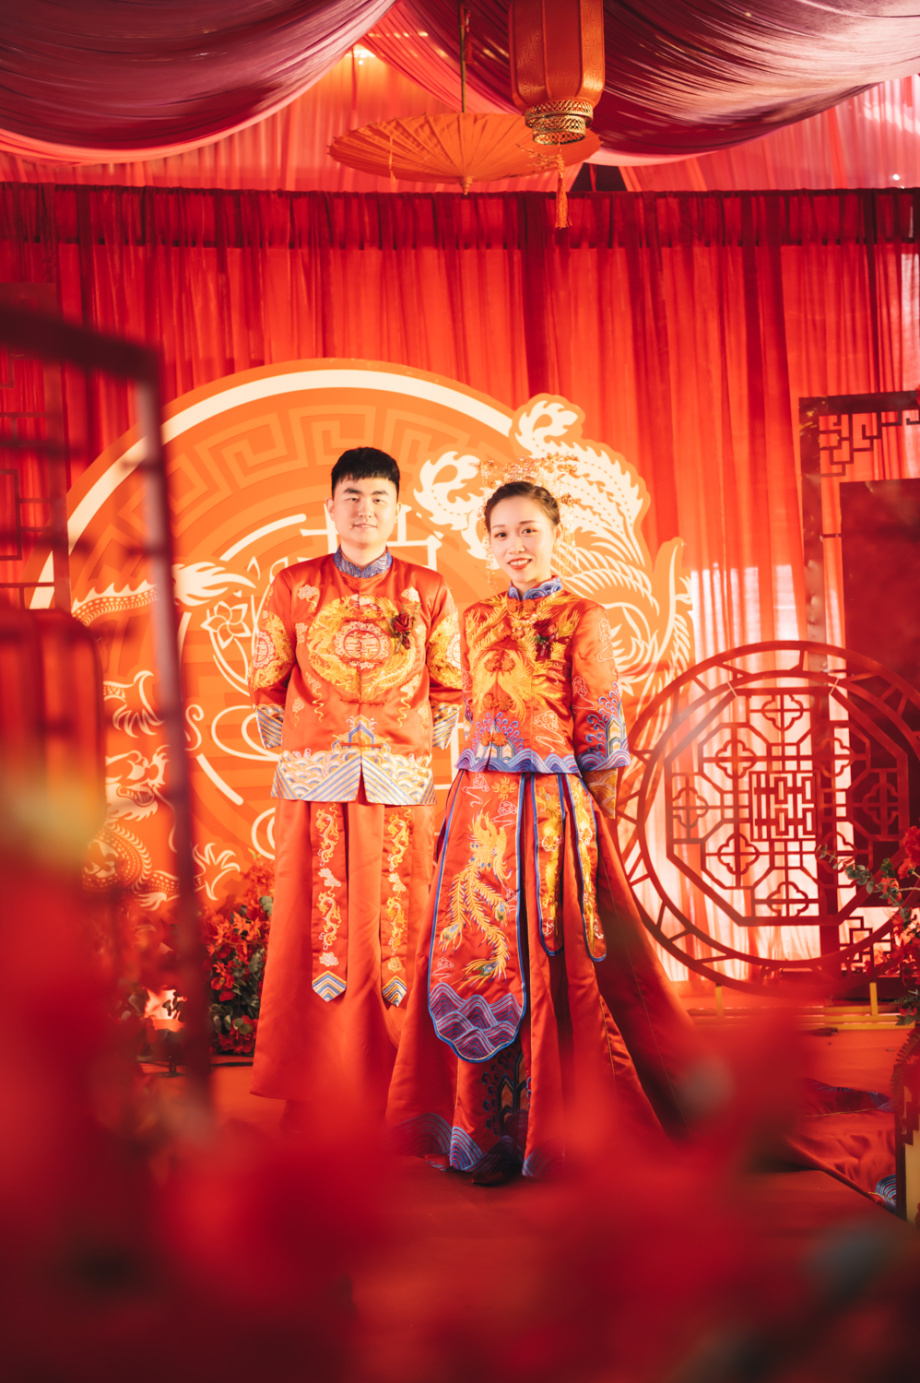 Chụp ảnh cưới cổ trang Trung Quốc là xu hướng được nhiều cặp đôi yêu thích trong những năm gần đây. Hãy tham khảo những gợi ý và mẫu ảnh liên quan để có được một bộ ảnh cưới cổ trang hoàn hảo cho ngày trọng đại của bạn.